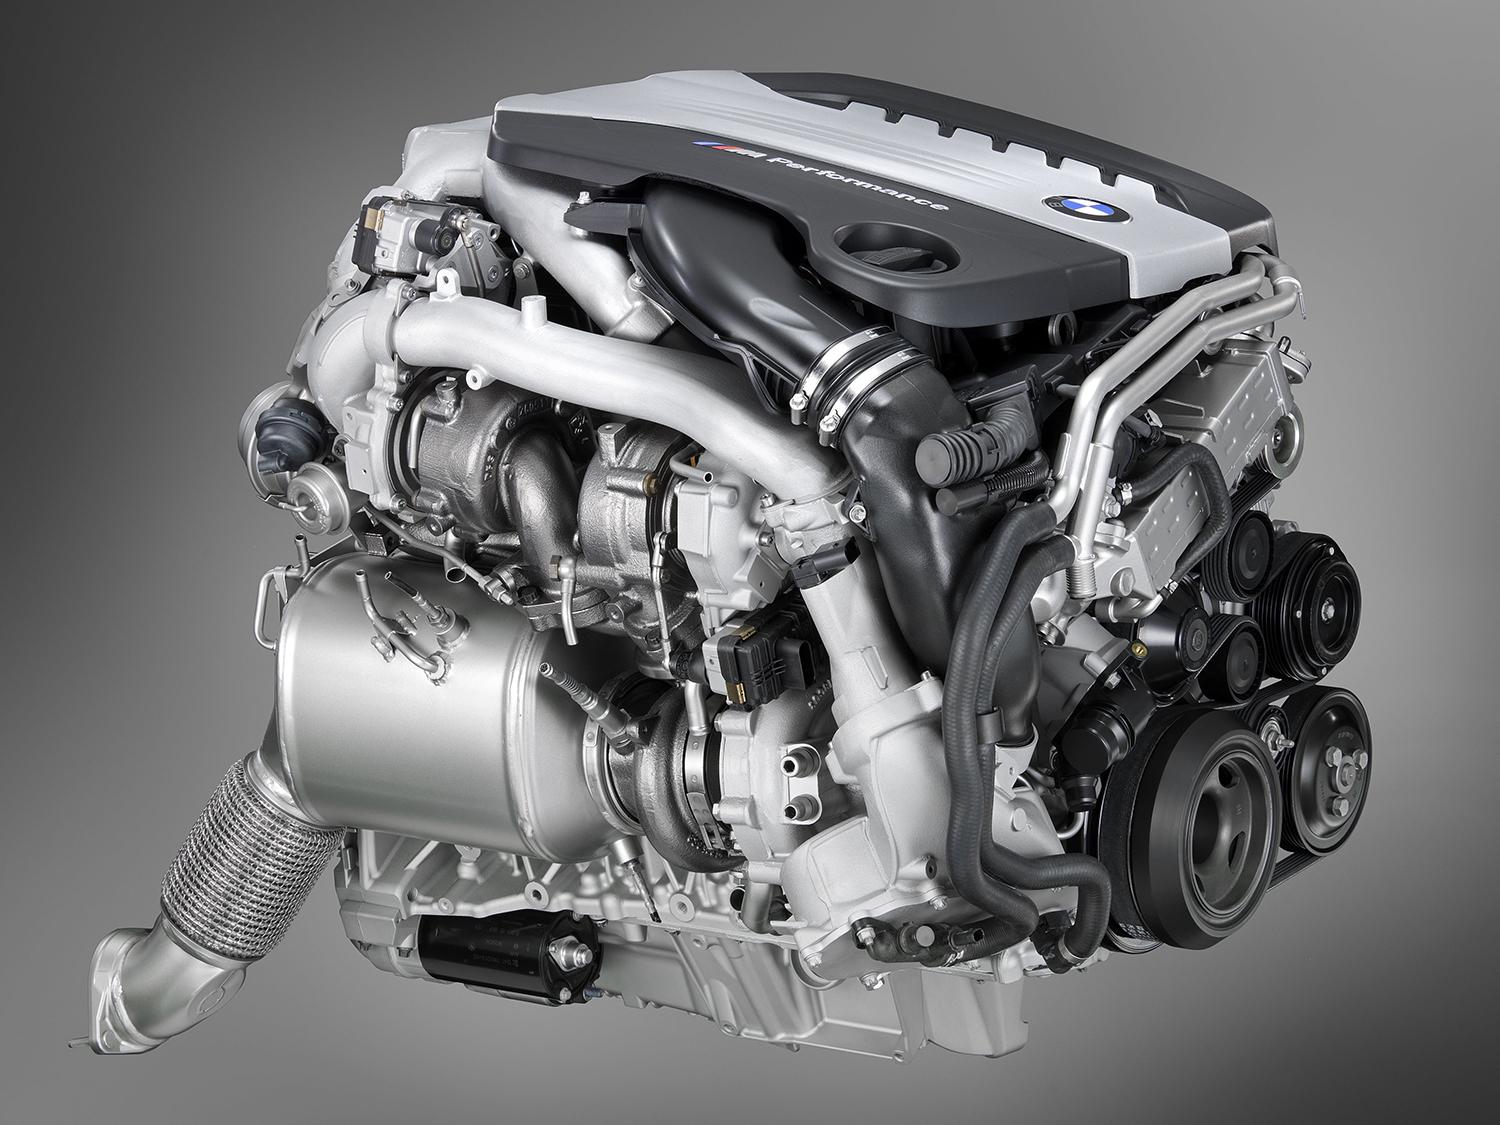 BMWのトリプルターボディーゼルエンジンN57S